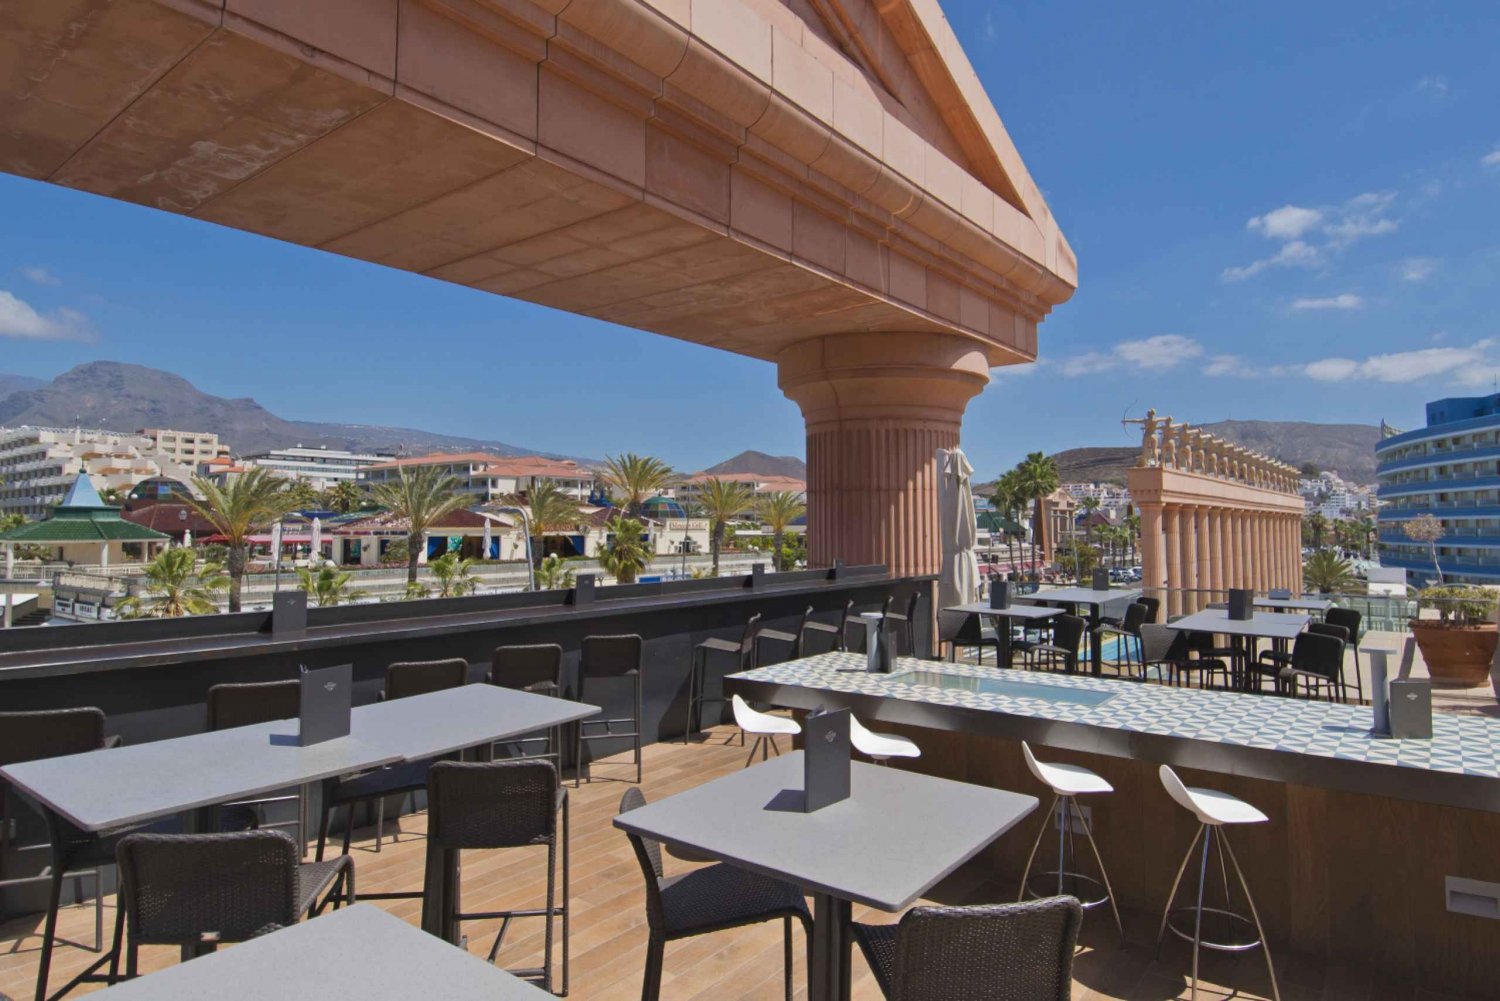 Tenerife : Hard Rock Cafe Set Menu Lunch or Dinner